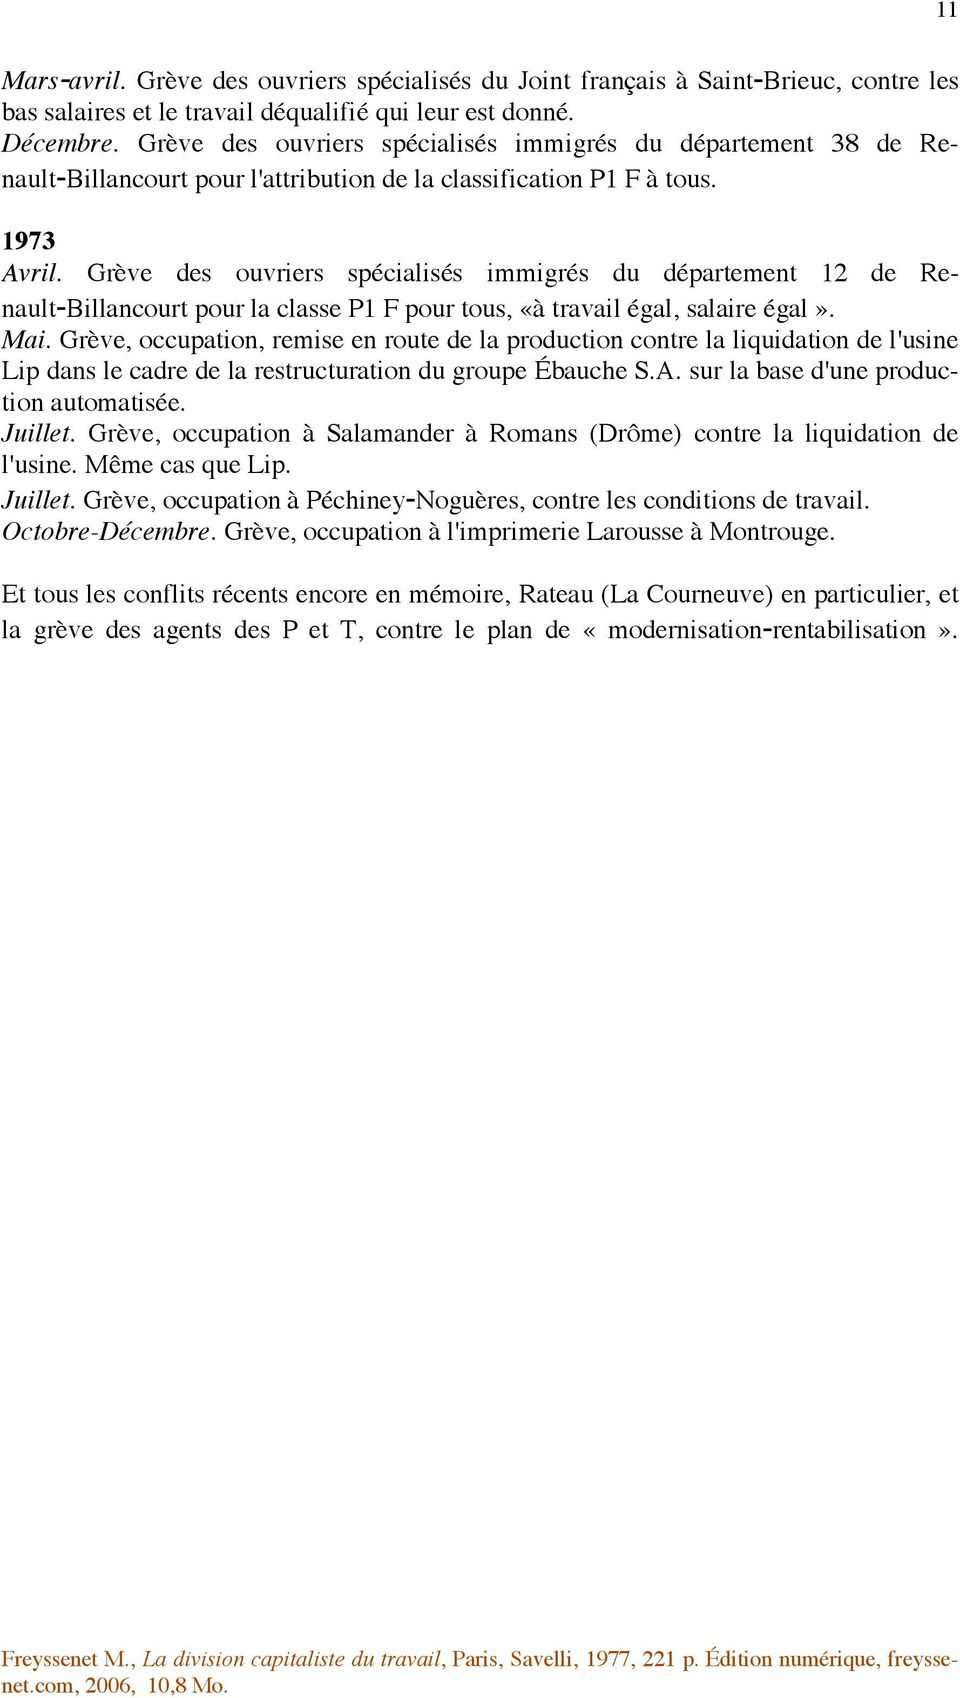 Grève des ouvriers spécialisés immigrés du département 12 de Renault-Billancourt pour la classe P1 F pour tous, «à travail égal, salaire égal». Mai.